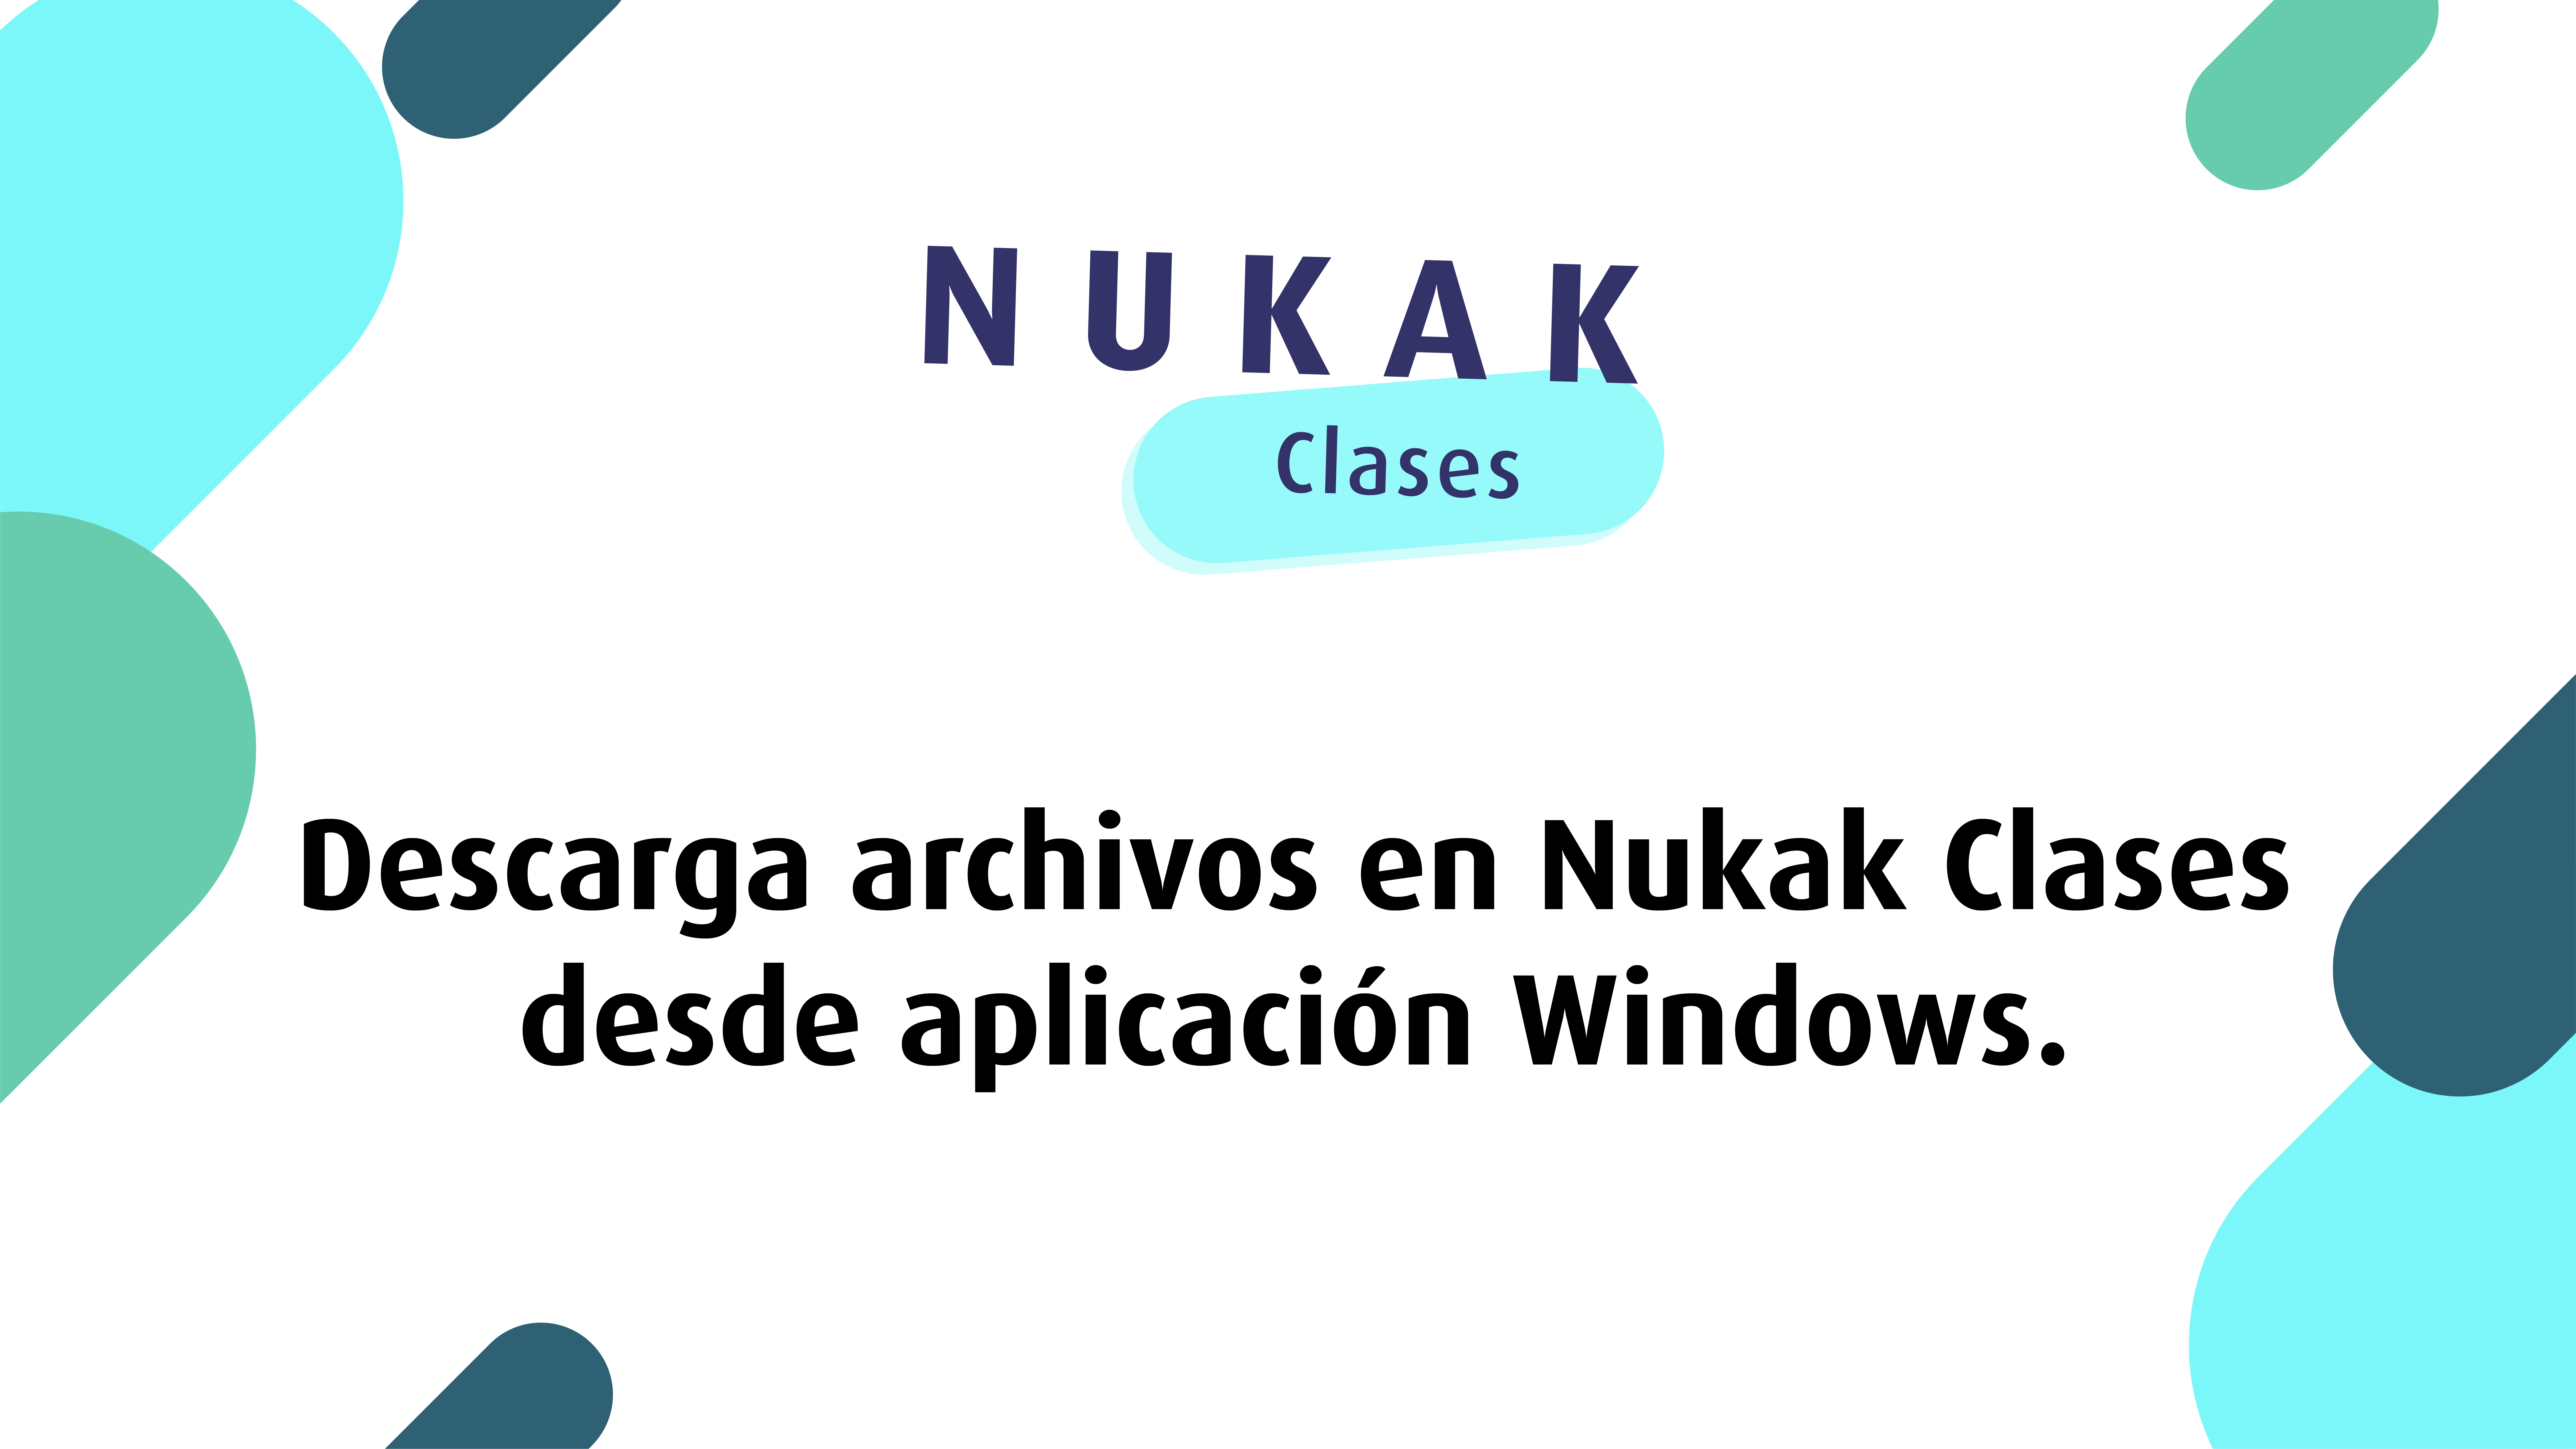 Descargar archivos en Nukak Clases desde app Windows